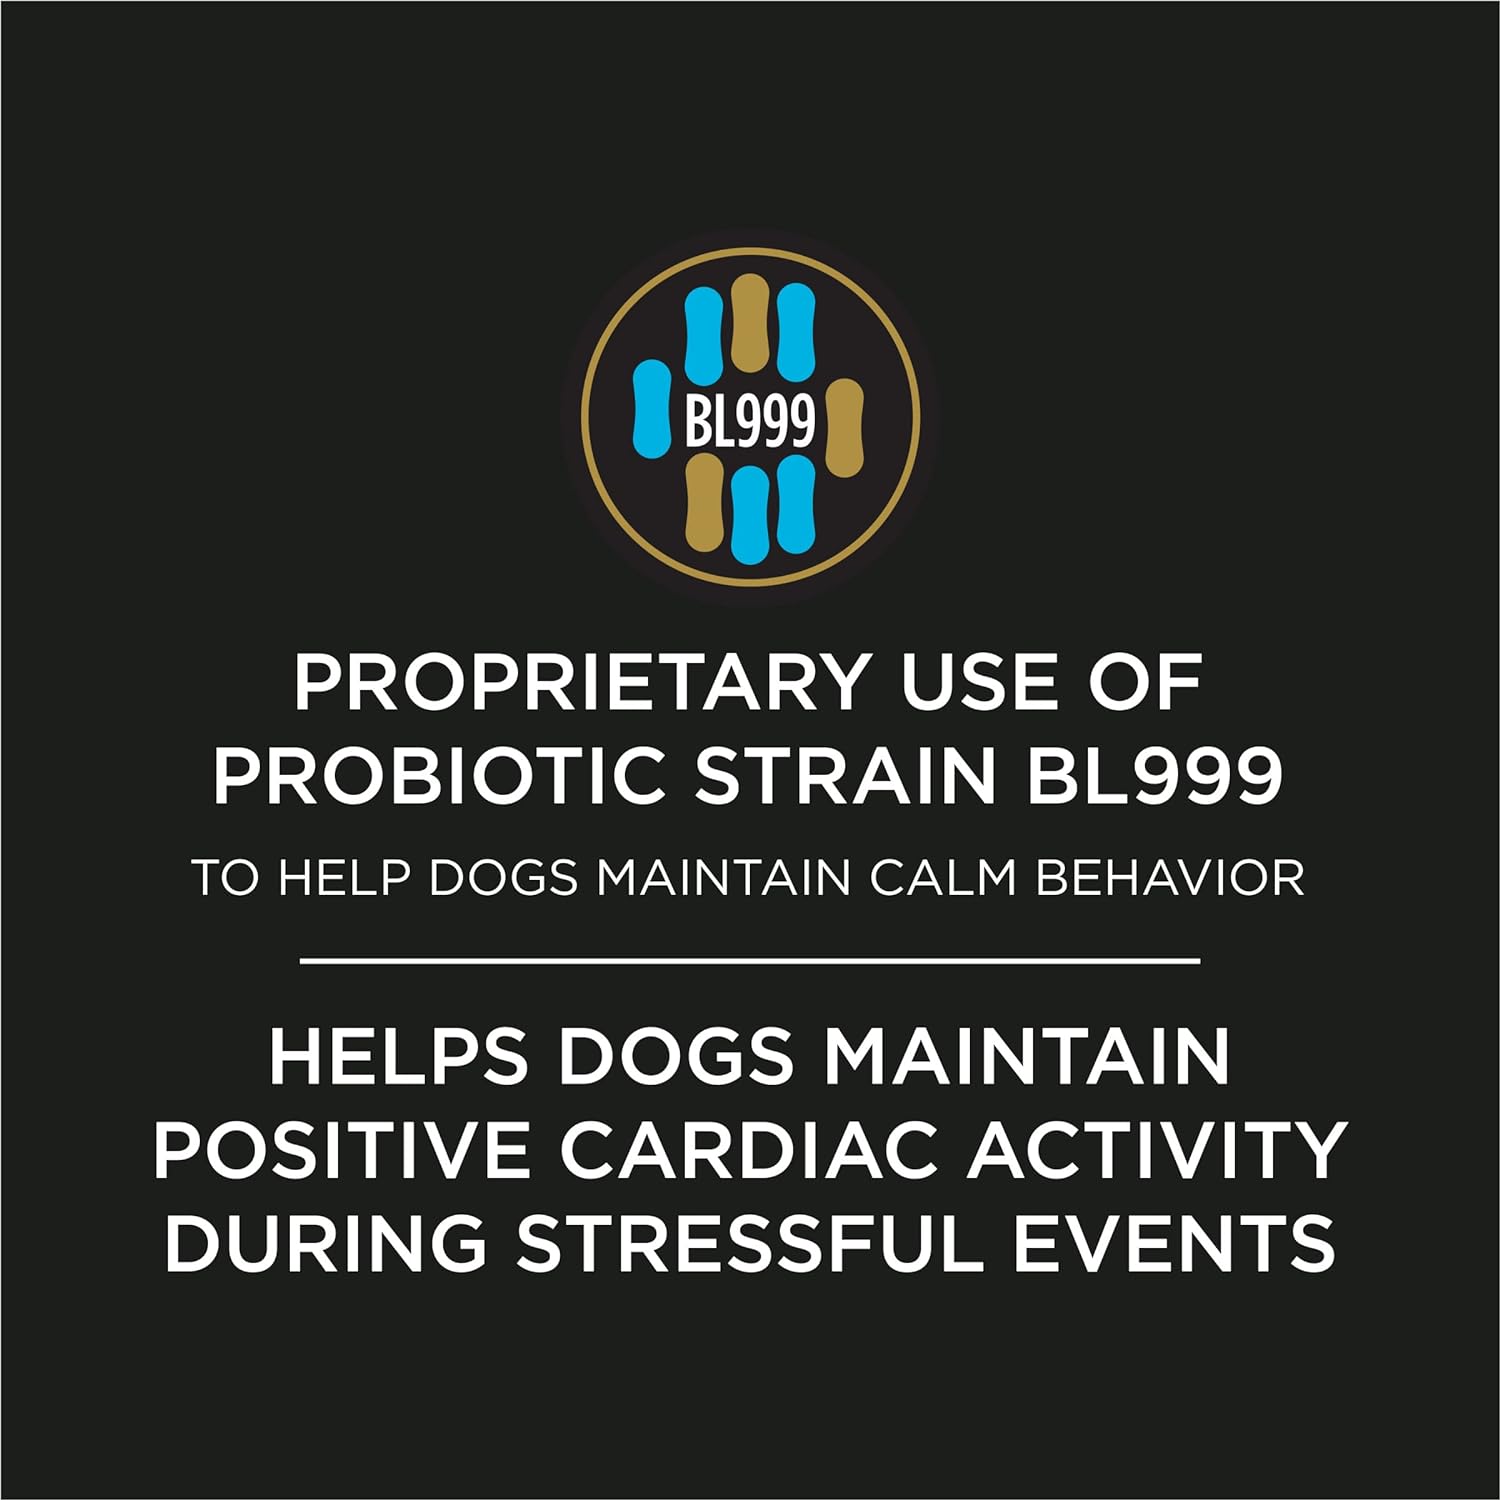 Tratamiento calmante para perros Pro Plan, suplementos calmantes, 30 unidades